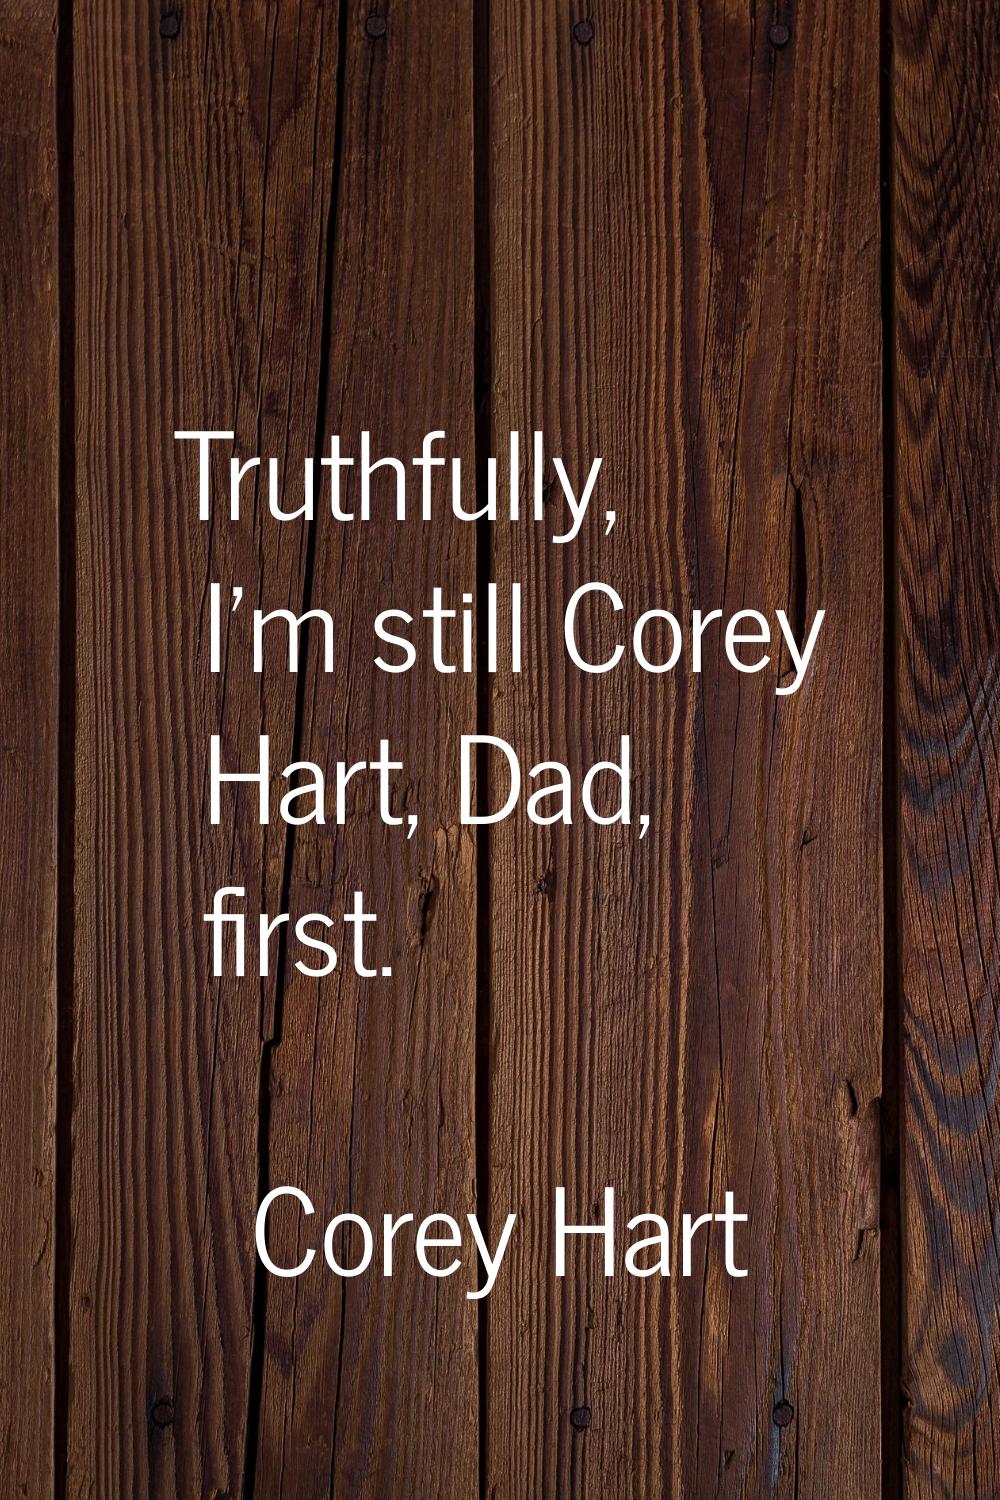 Truthfully, I'm still Corey Hart, Dad, first.